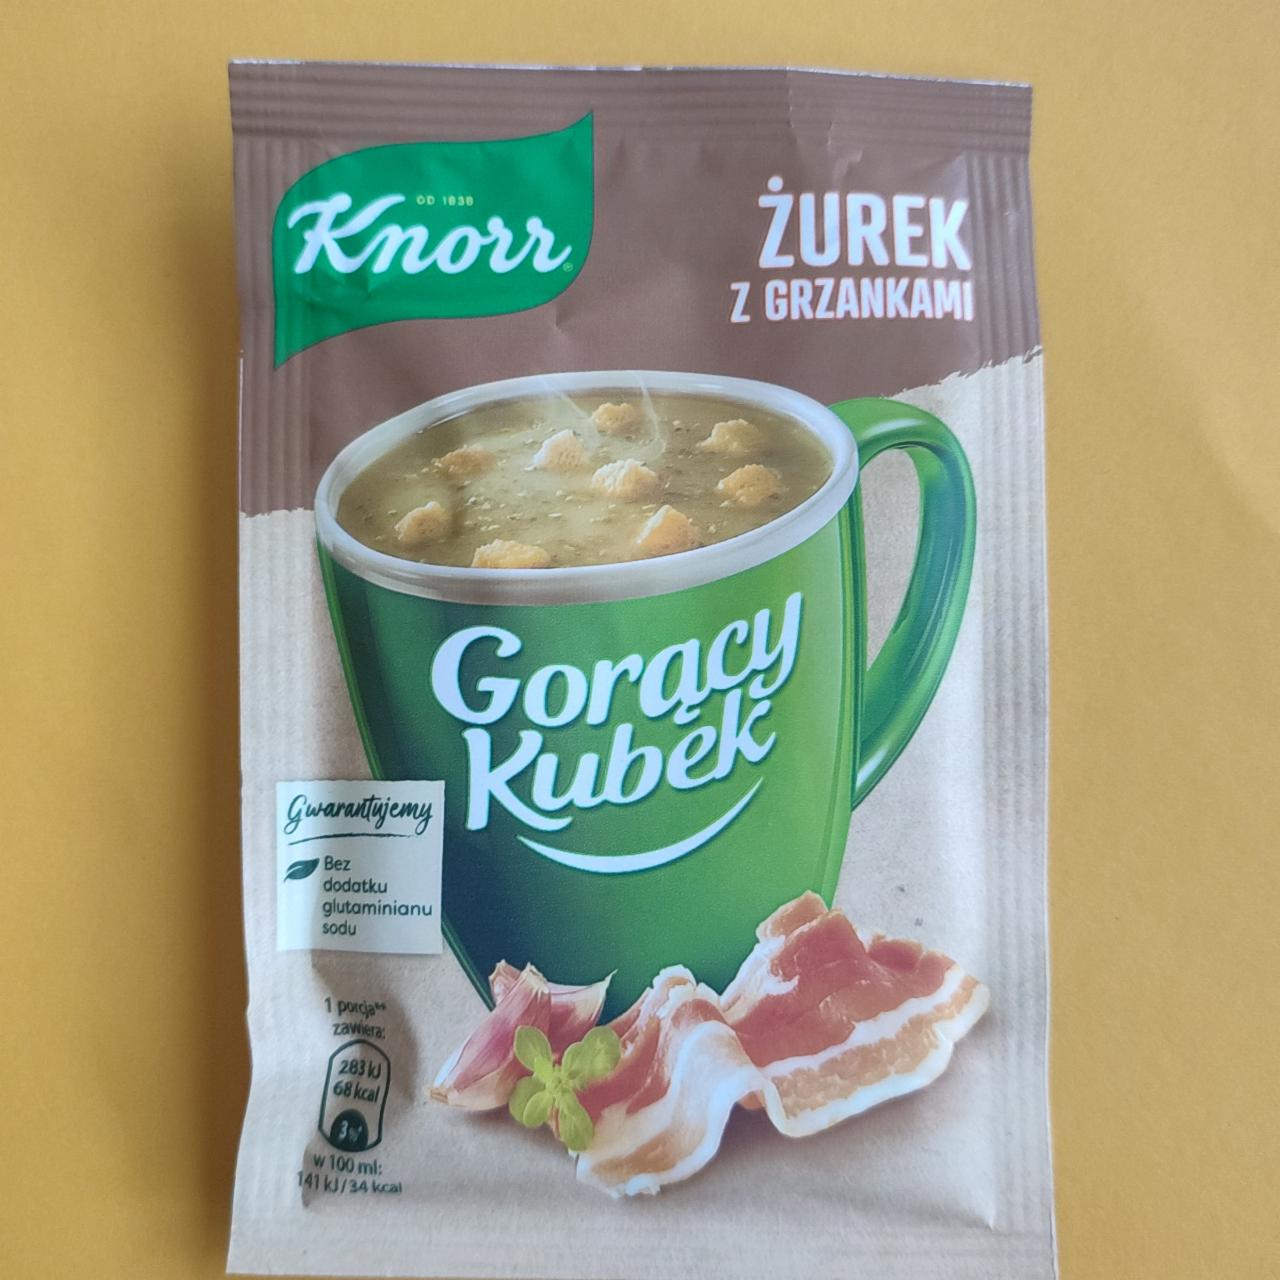 Fotografie - Gorący Kubek Żurek z grzankami Knorr